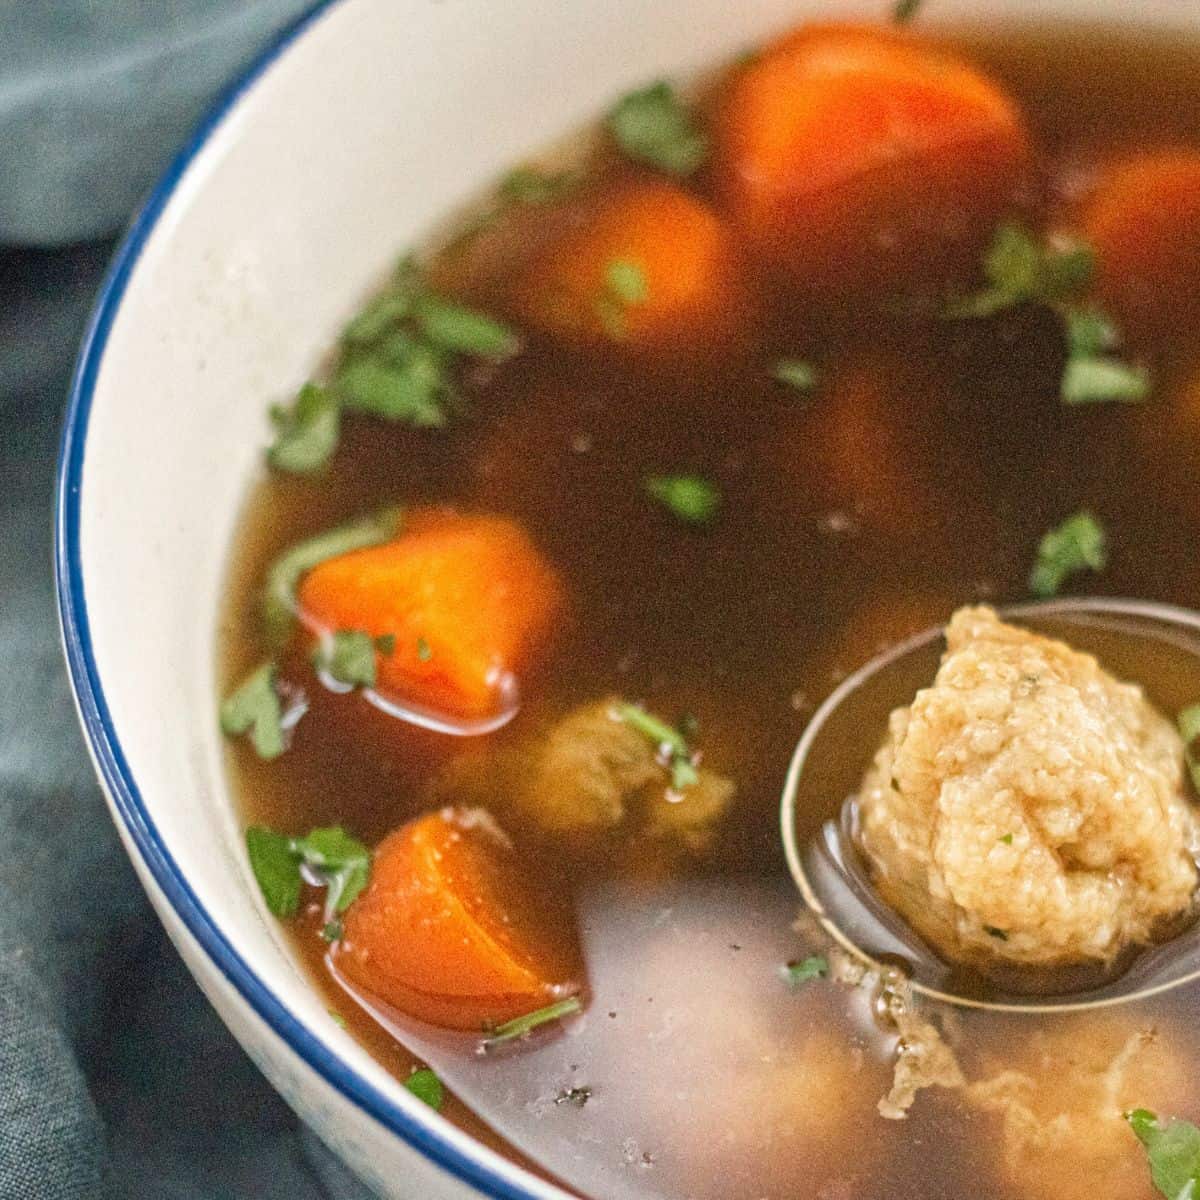 Mollie Katzen’s No-Chicken Soup with Vegan Matzoh Balls